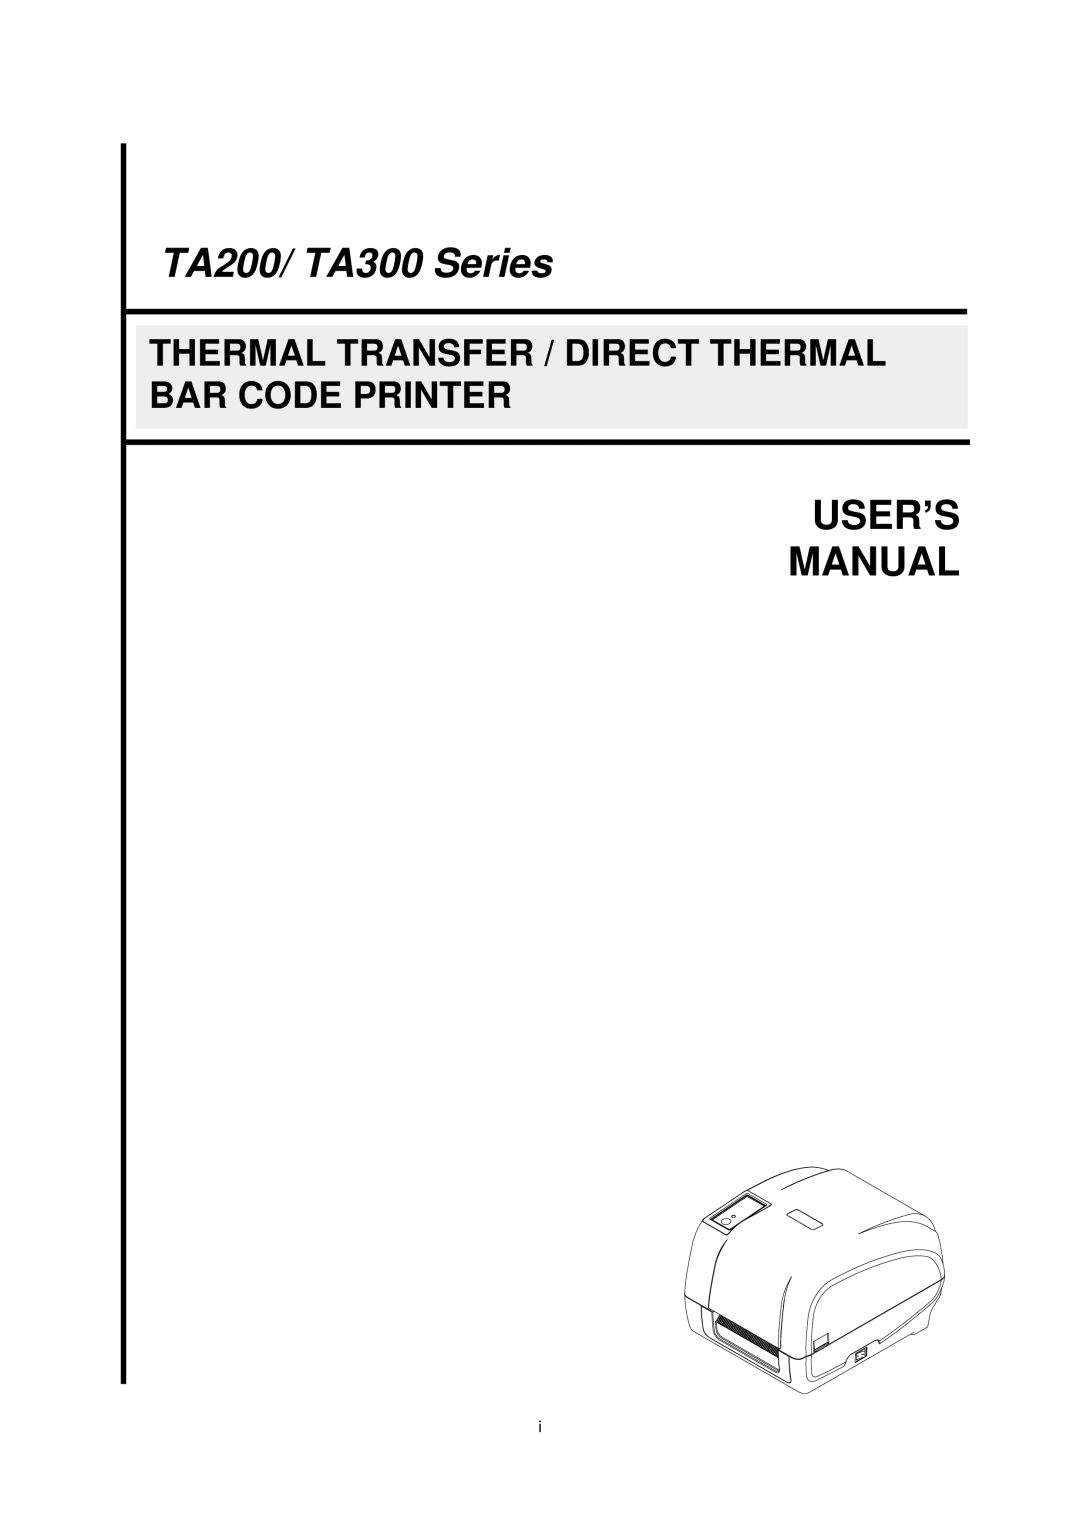 The Speaker Company ta200 manual Thermal Transfer / Direct Thermal Bar Code Printer, TA200/ TA300 Series, User’S Manual 